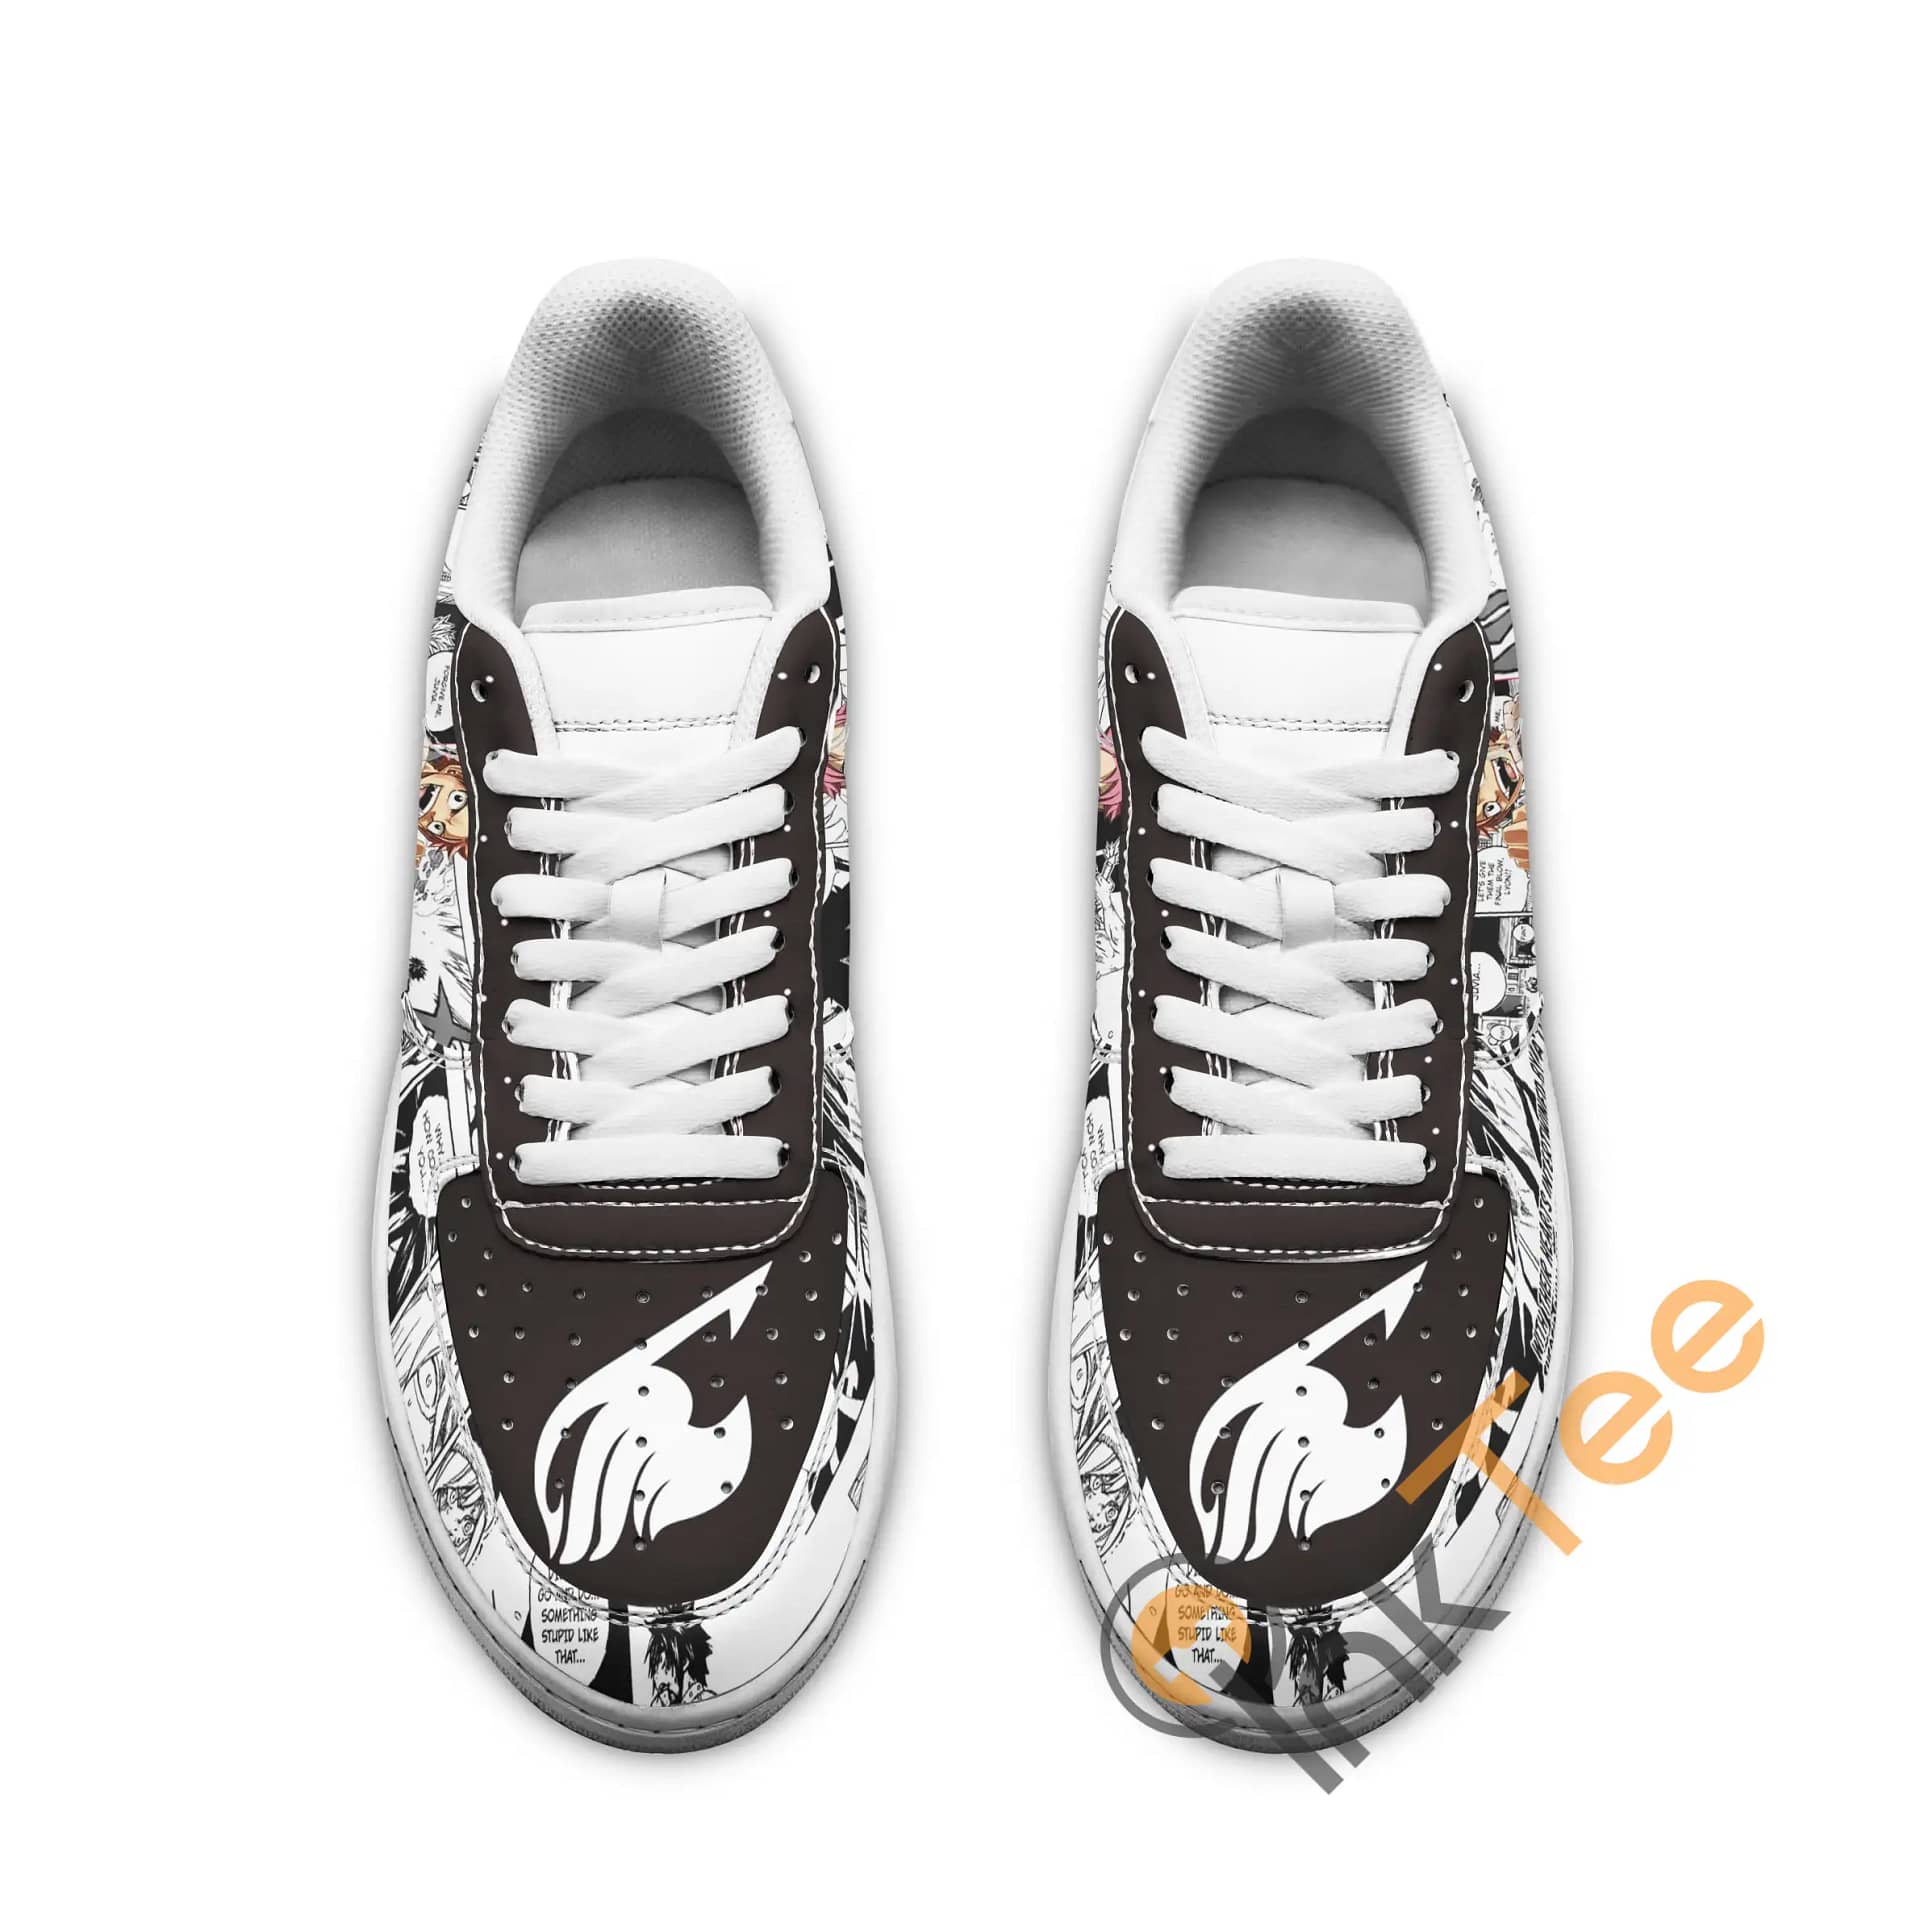 Fairy Tail Manga Anime Fan Gift Idea Amazon Nike Air Force Shoes